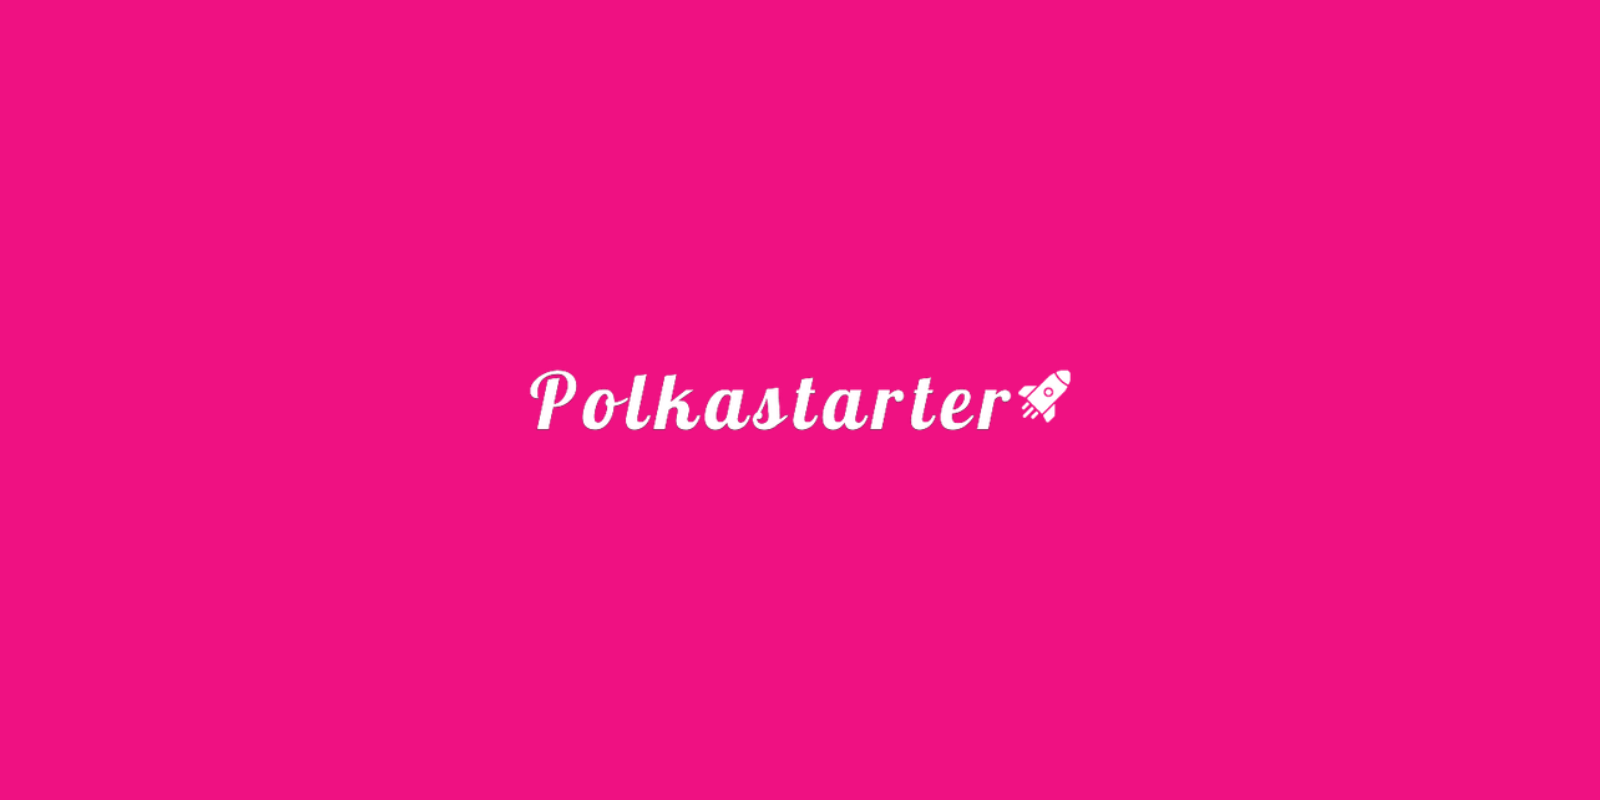 Polkastarter (POLS) décroche la première place du classement DeFi sur Uniswap